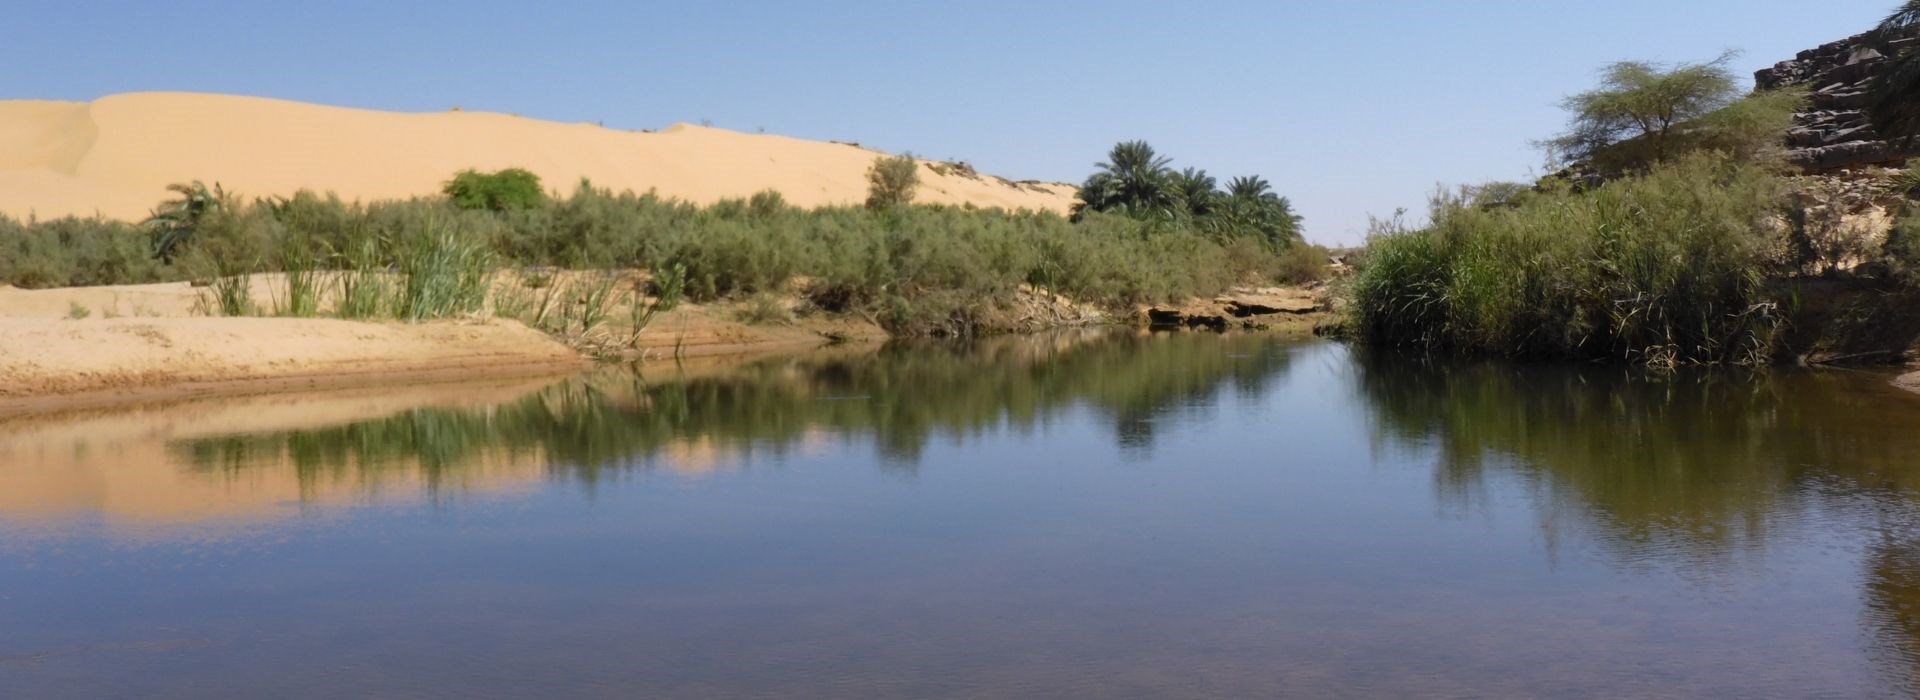 Visiter L'Oasis El Gleitat - Mauritanie